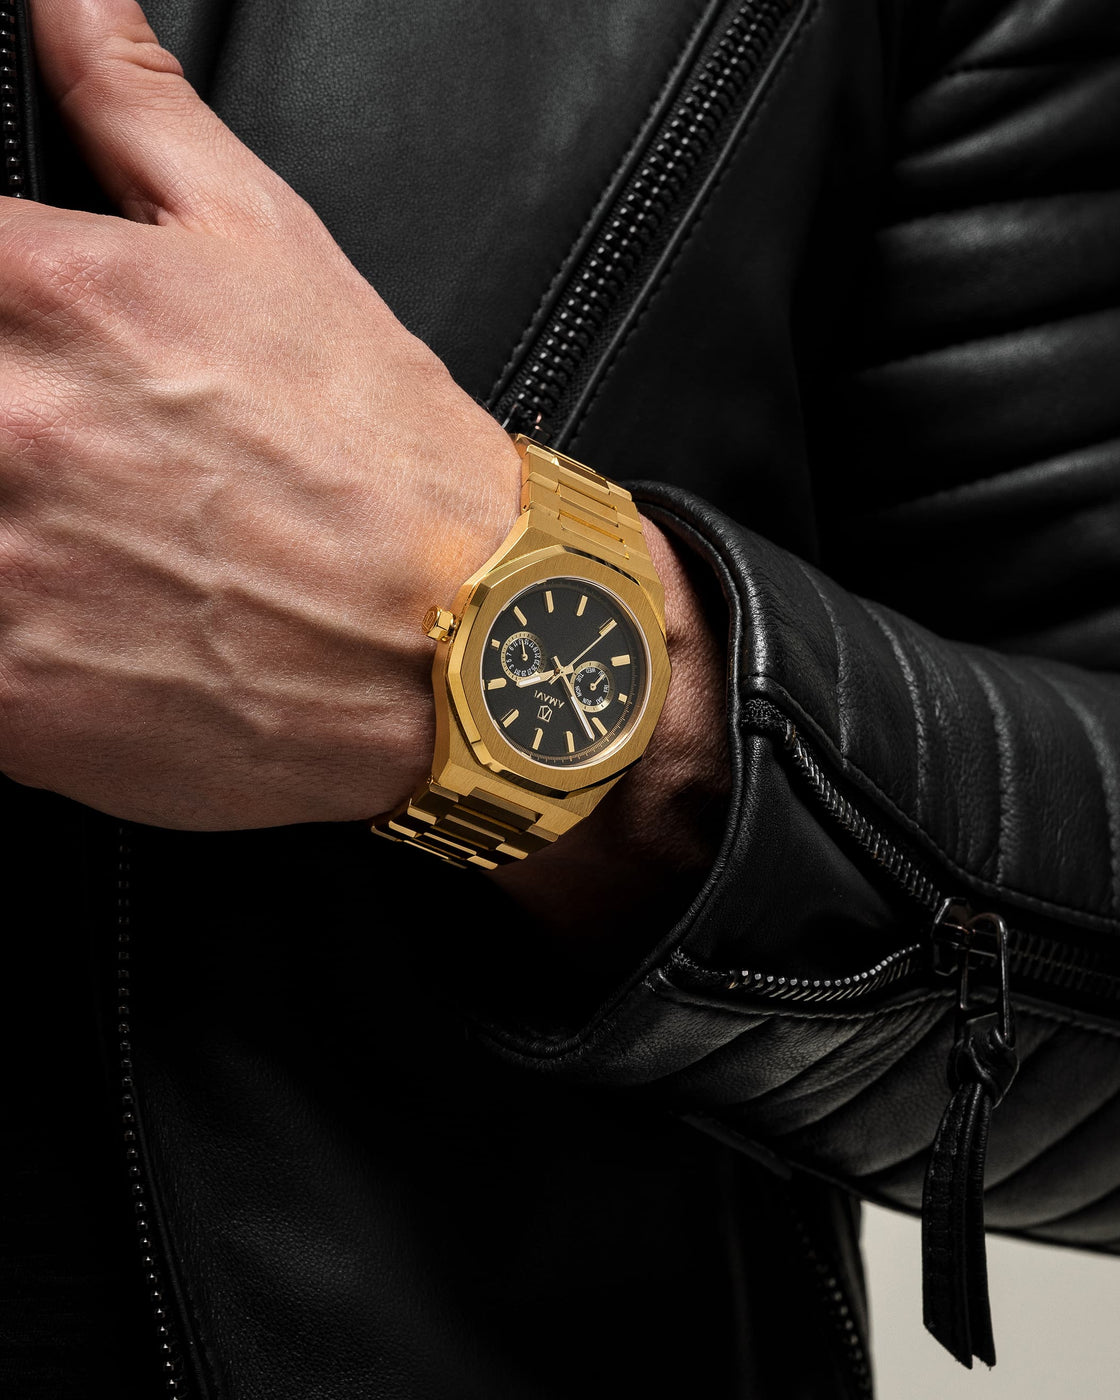 Royal Enfield Wrist Watch AS 152 In Bulk | Promotional Wrist Watch